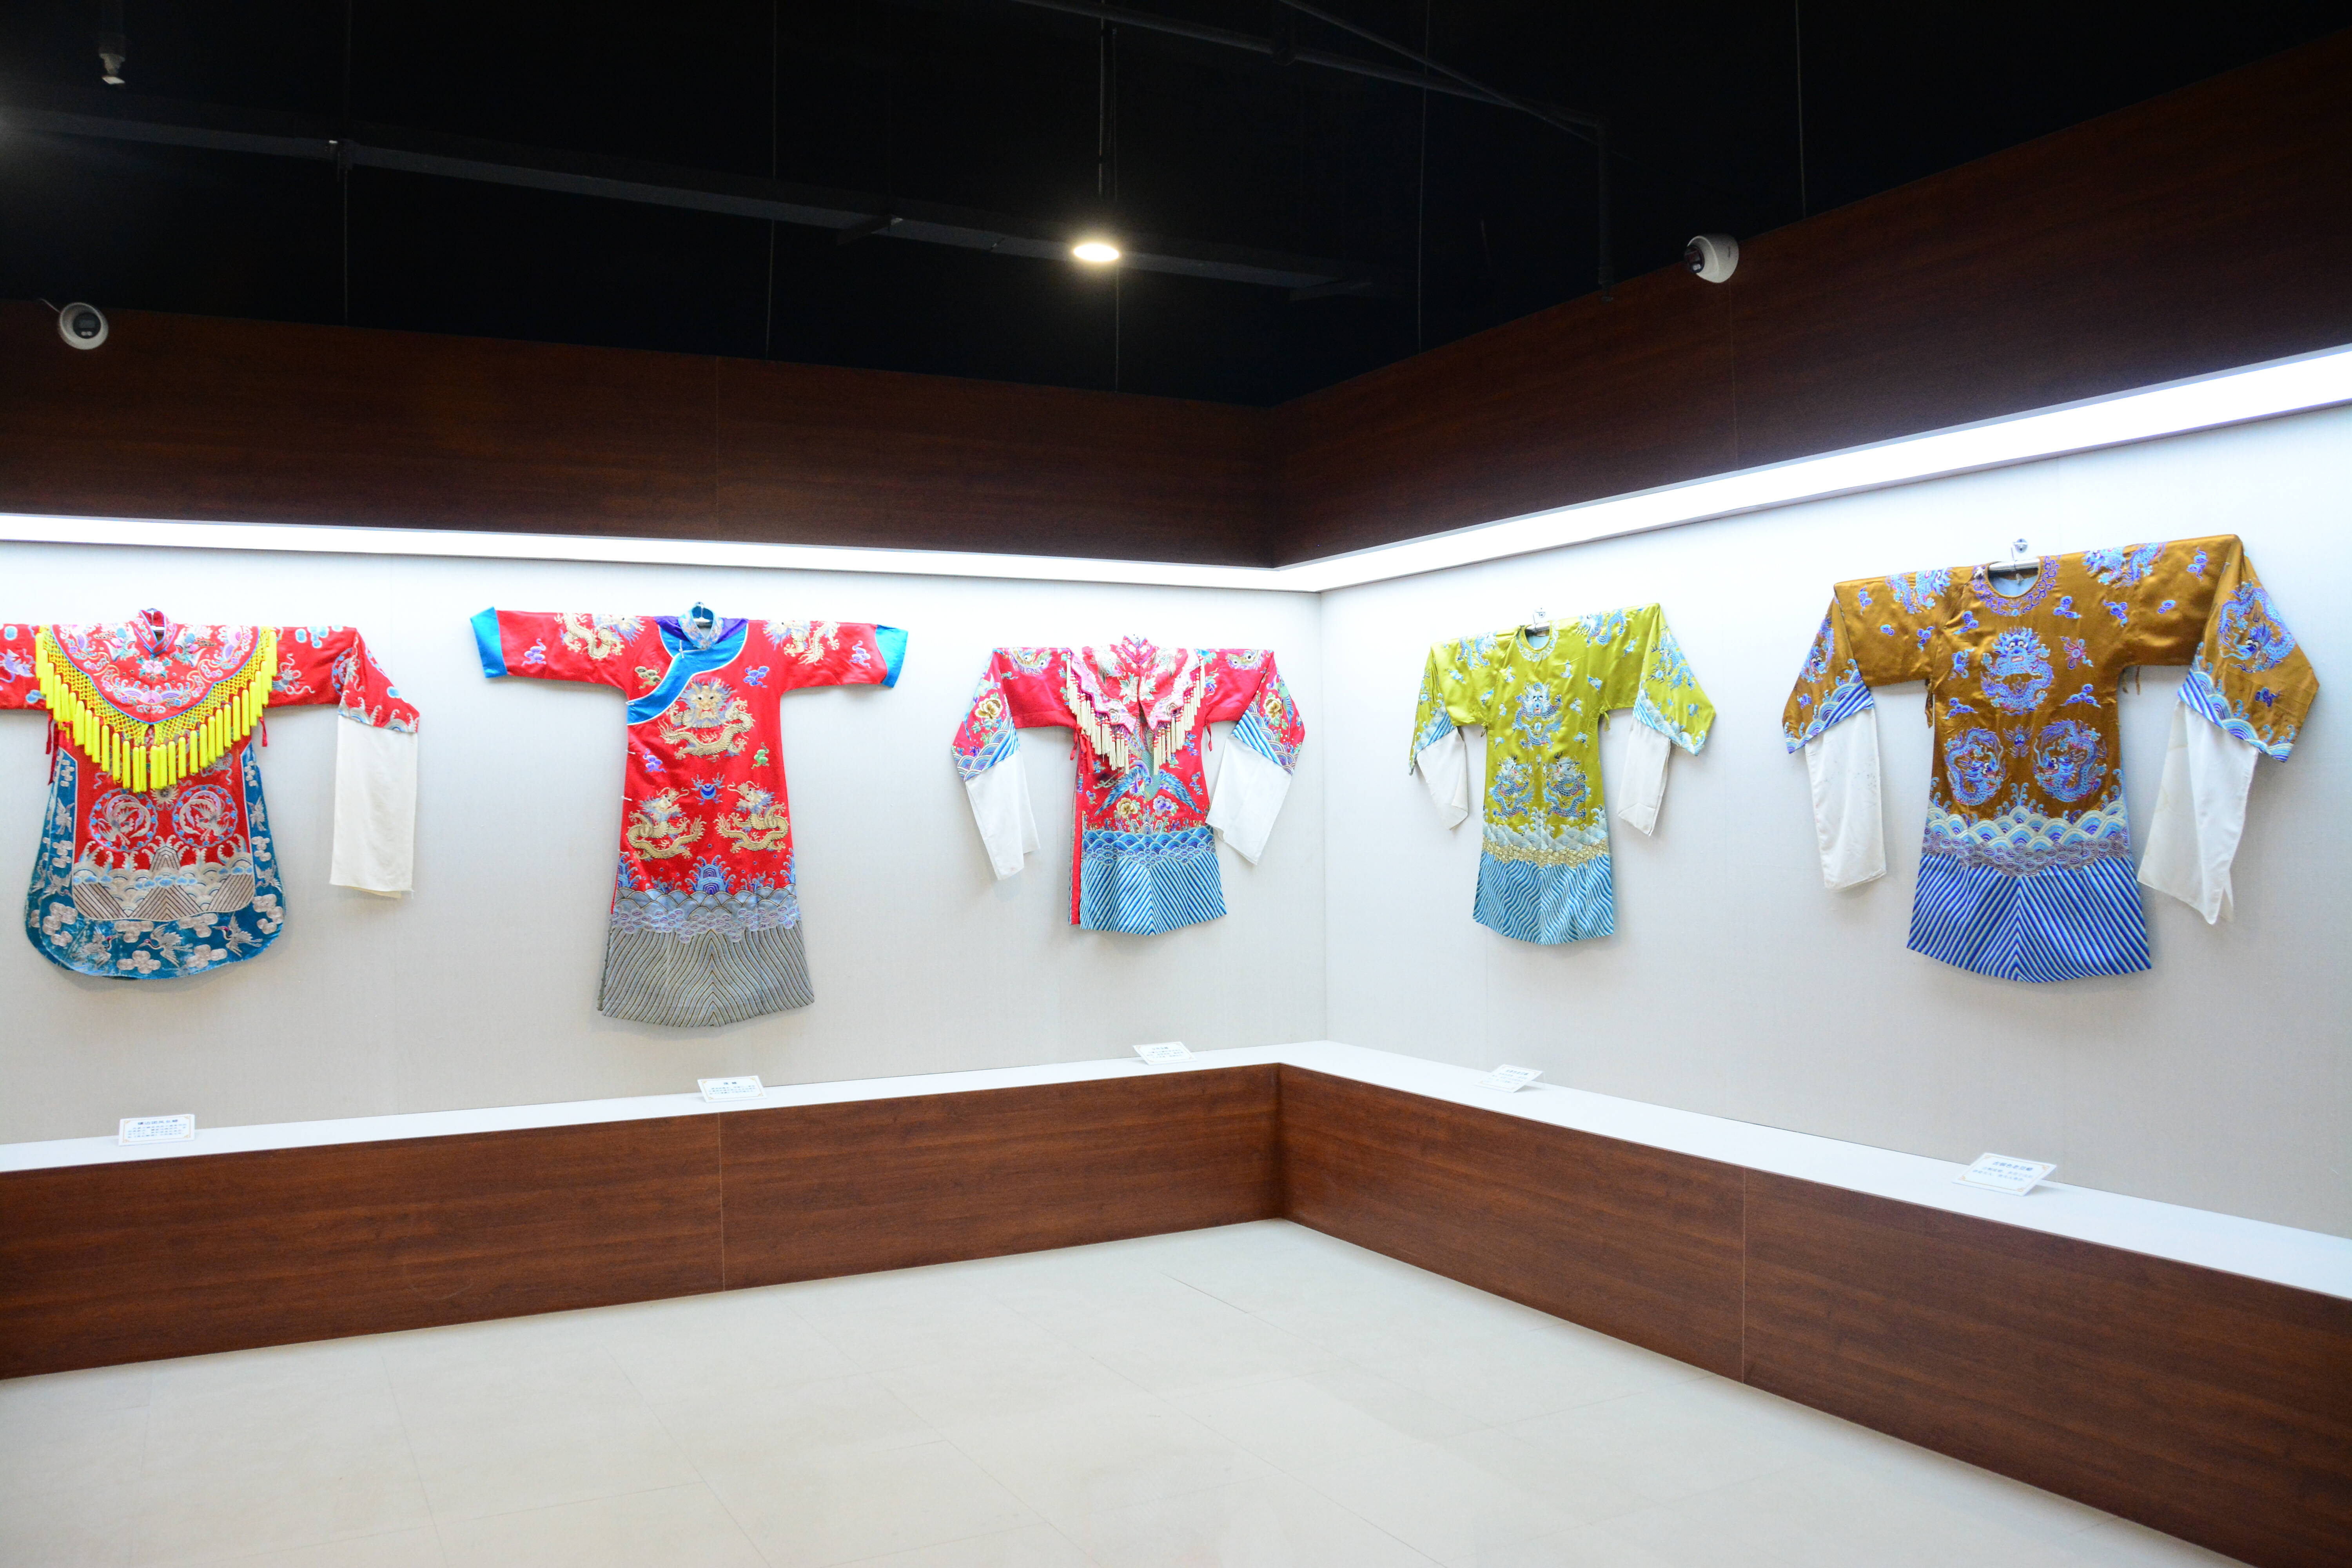 乳山市文化和旅游局局长于晓东表示:古装戏服文化展馆是乳山博物馆